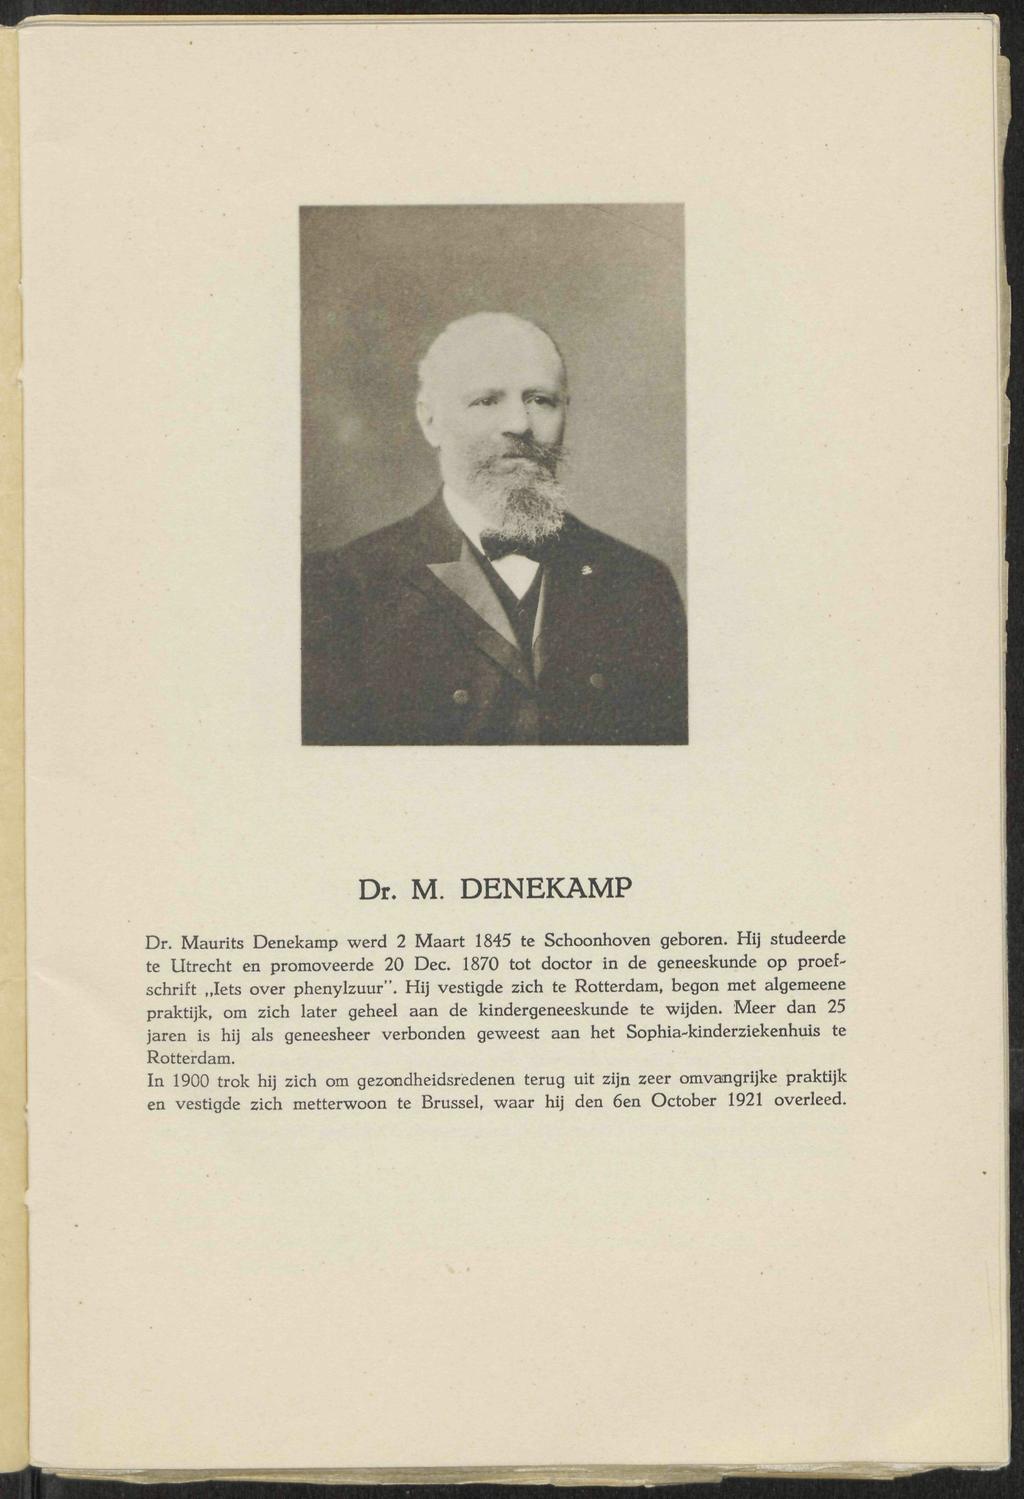 Dr. M. DENEKAMP Dr. Maurits Denekamp werd 2 Maart 1845 te Schoonhoven geboren. Hij studeerde te Utrecht en promoveerde 20 Dec. 1870 tot doctor in de geneeskunde op proefschrift Iets over phenylzuur".